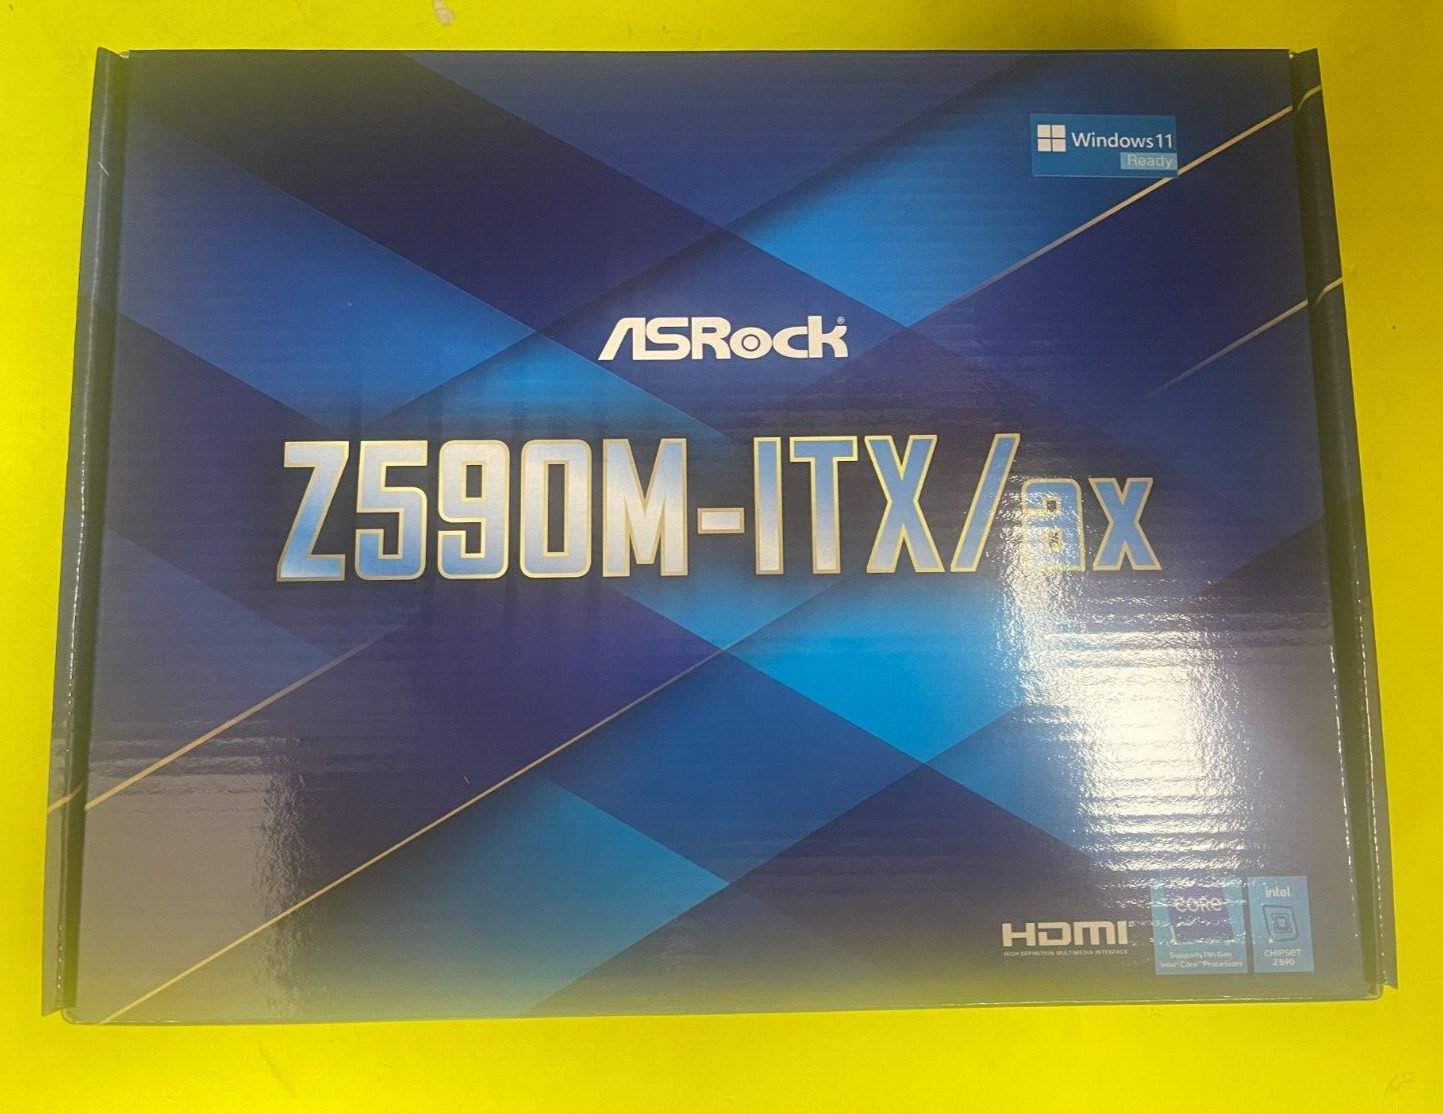 Brand New ASRock Z590M-ITX/ax LGA 1200 Mini-ITX WiFi